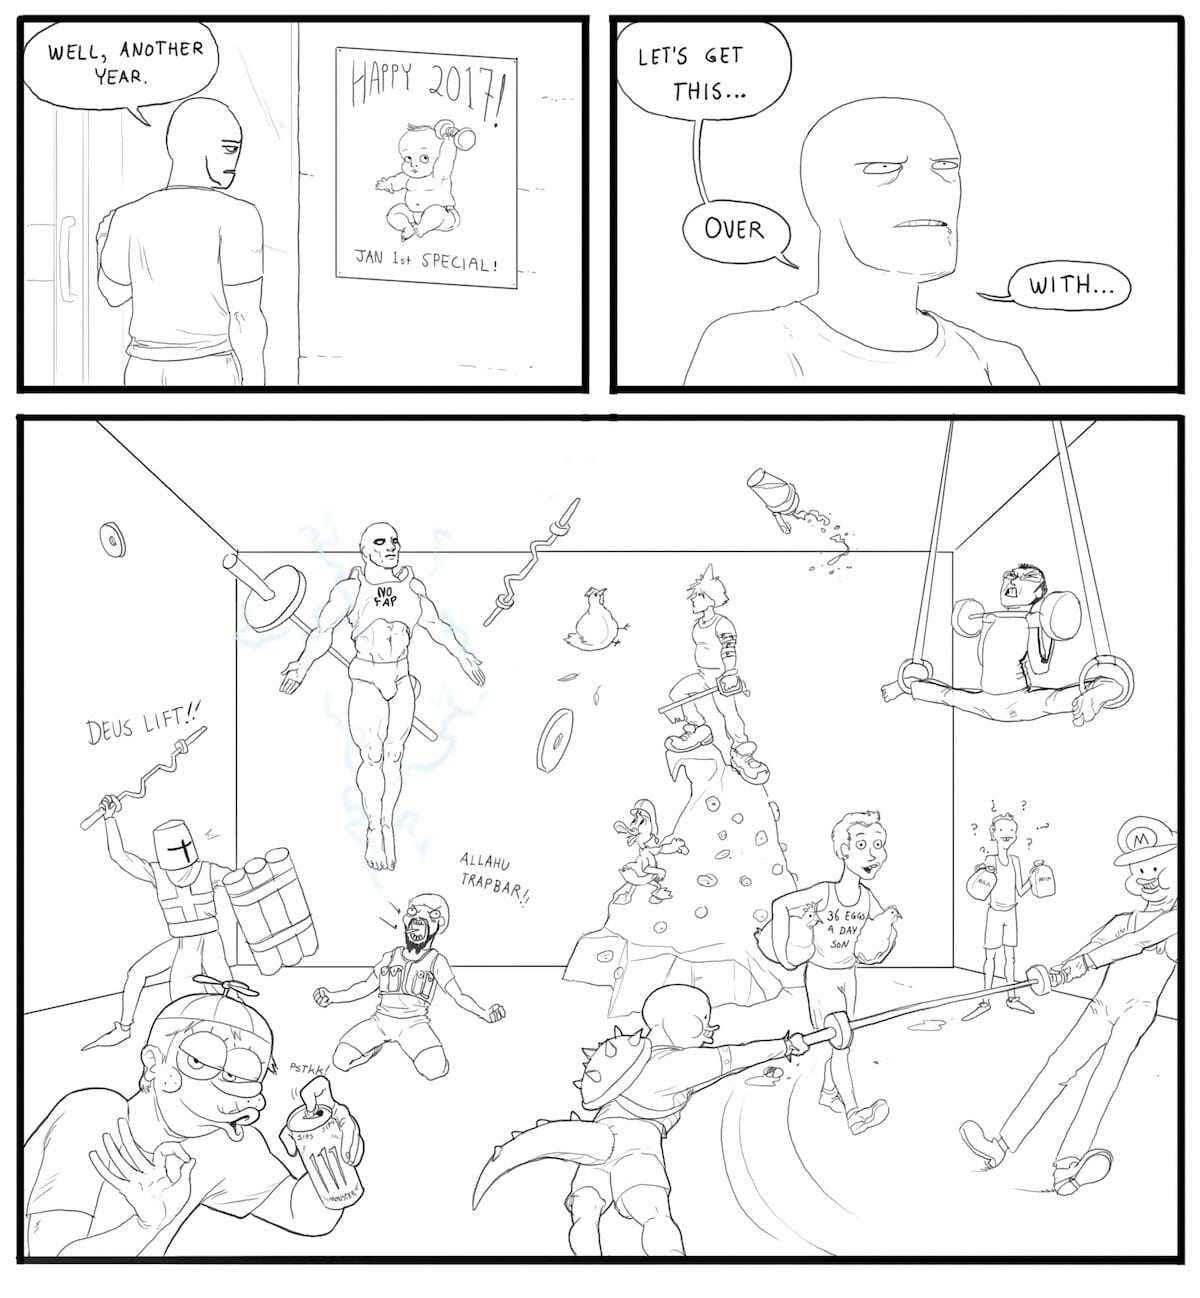 /fit/ comics Parte 2 page 1